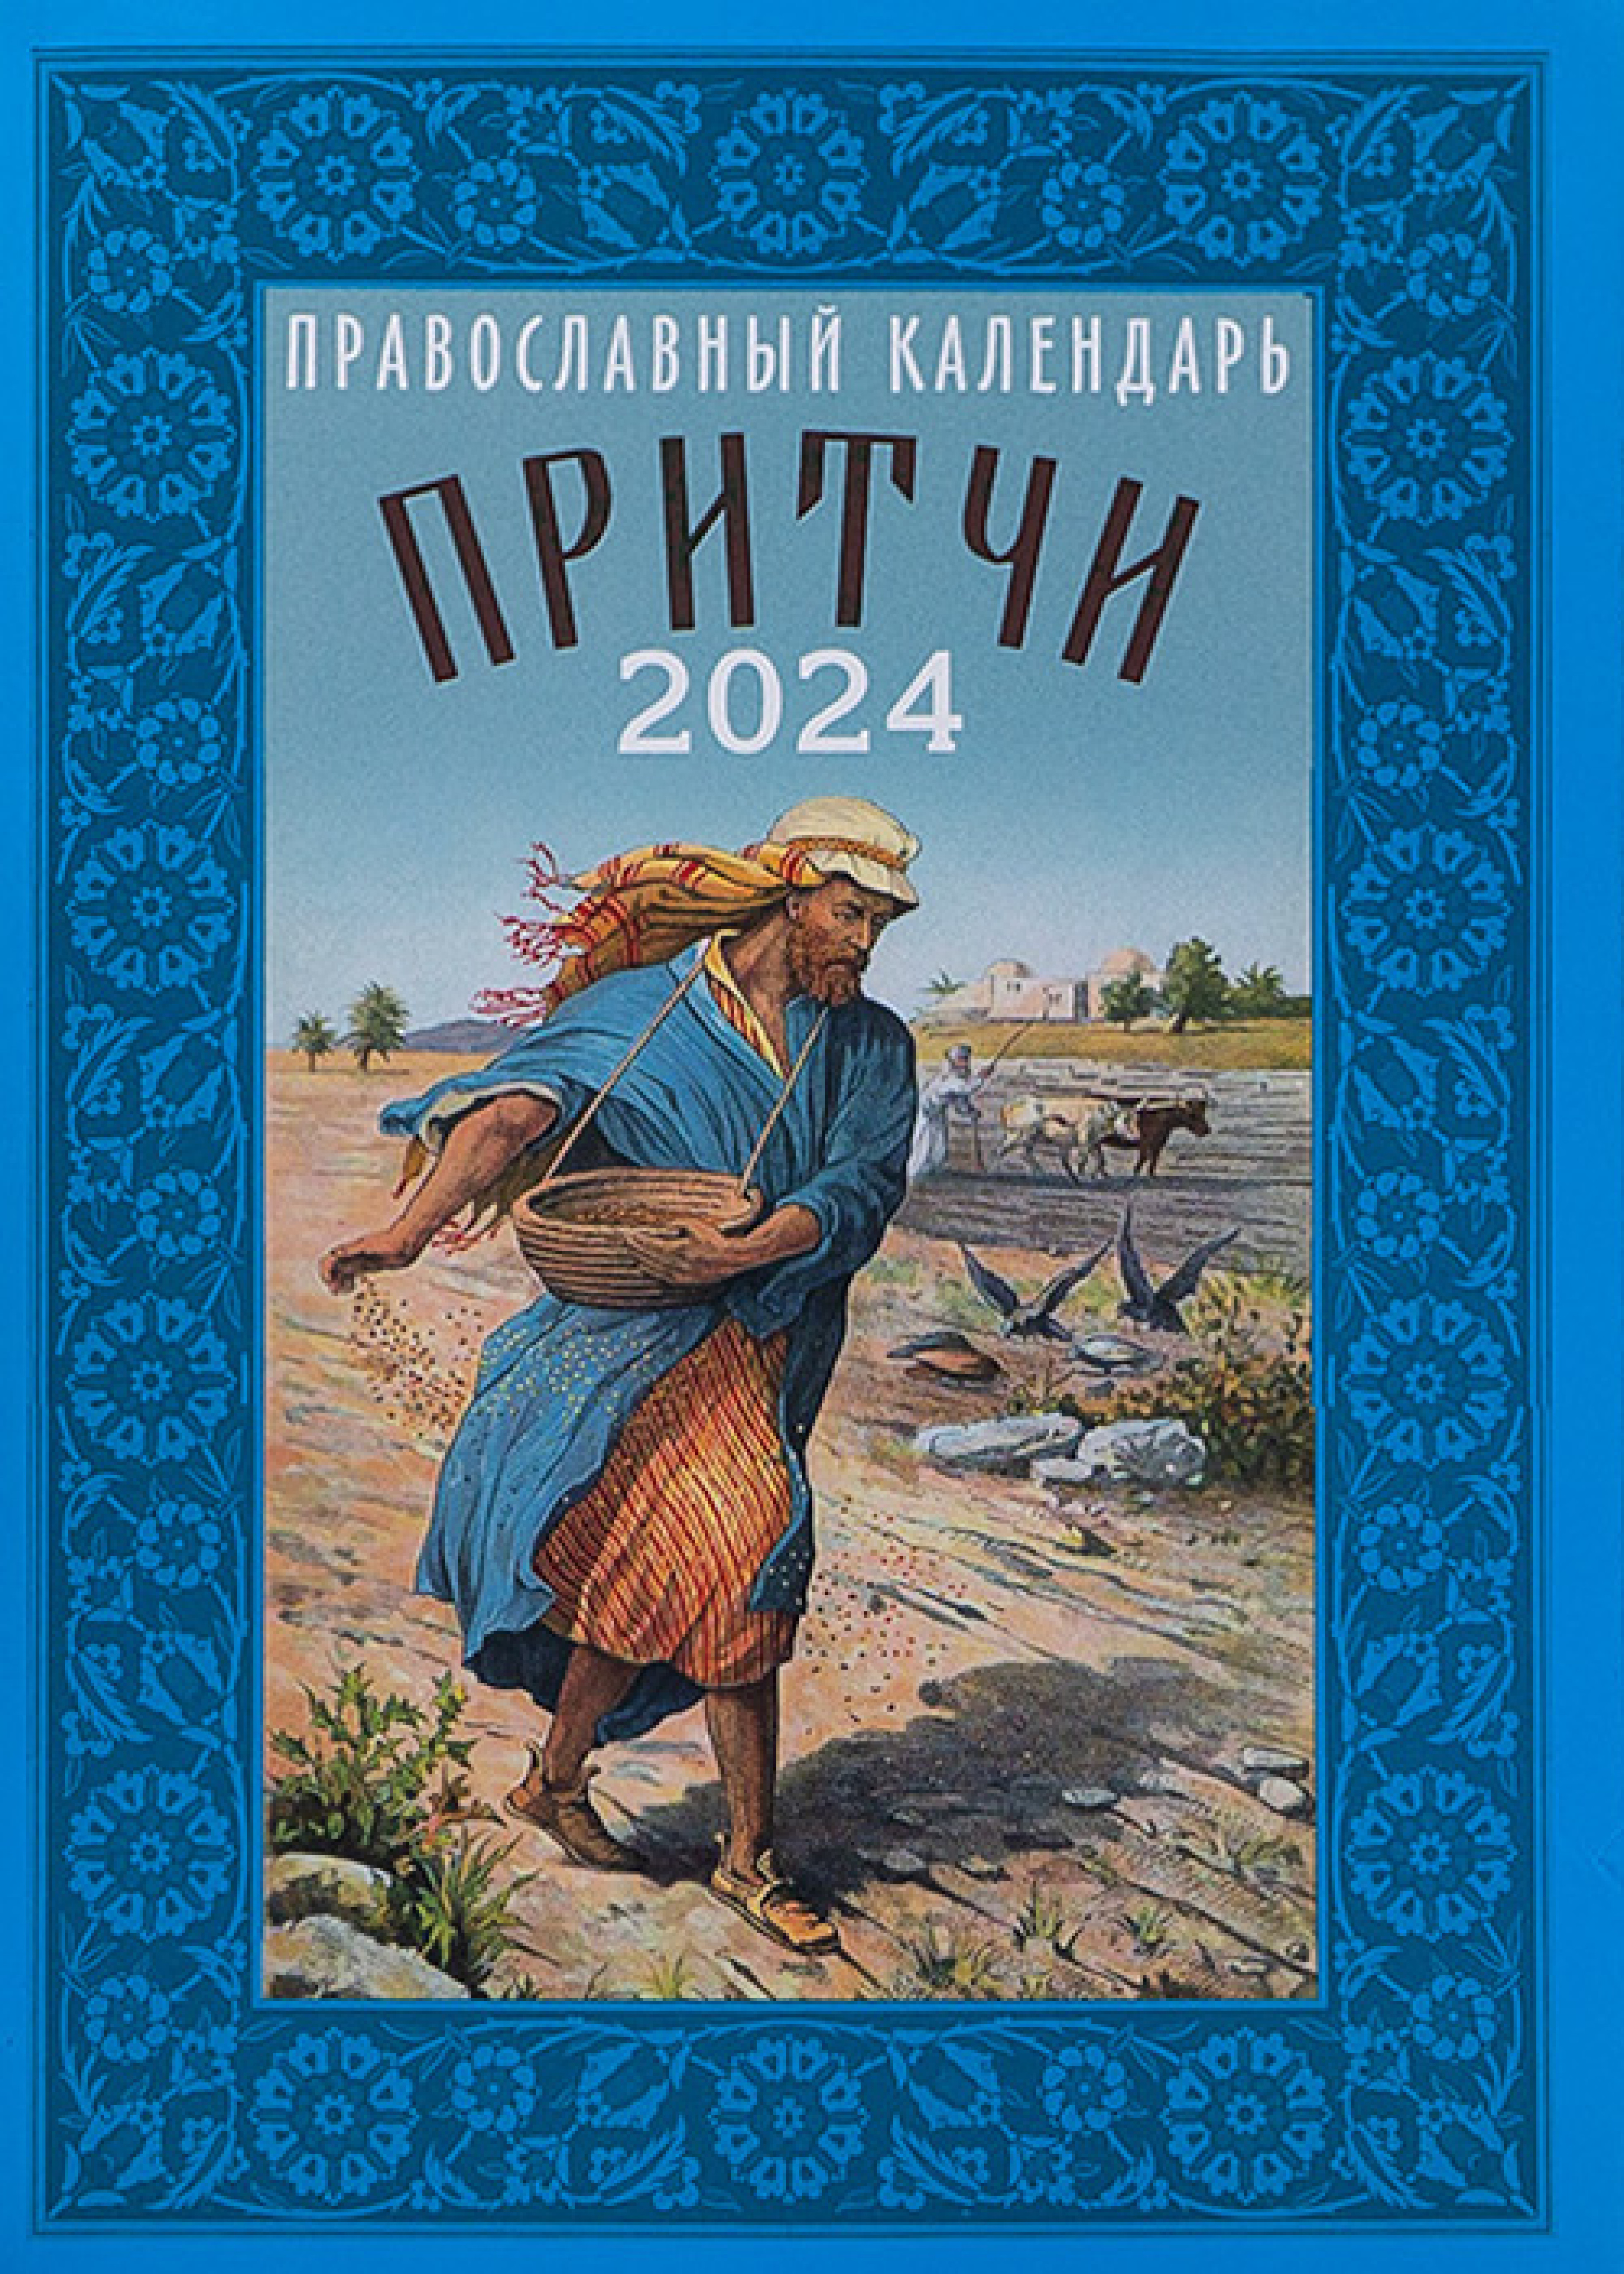 Календарь православный на 2024 год. Притчи купить - Свет Фавора